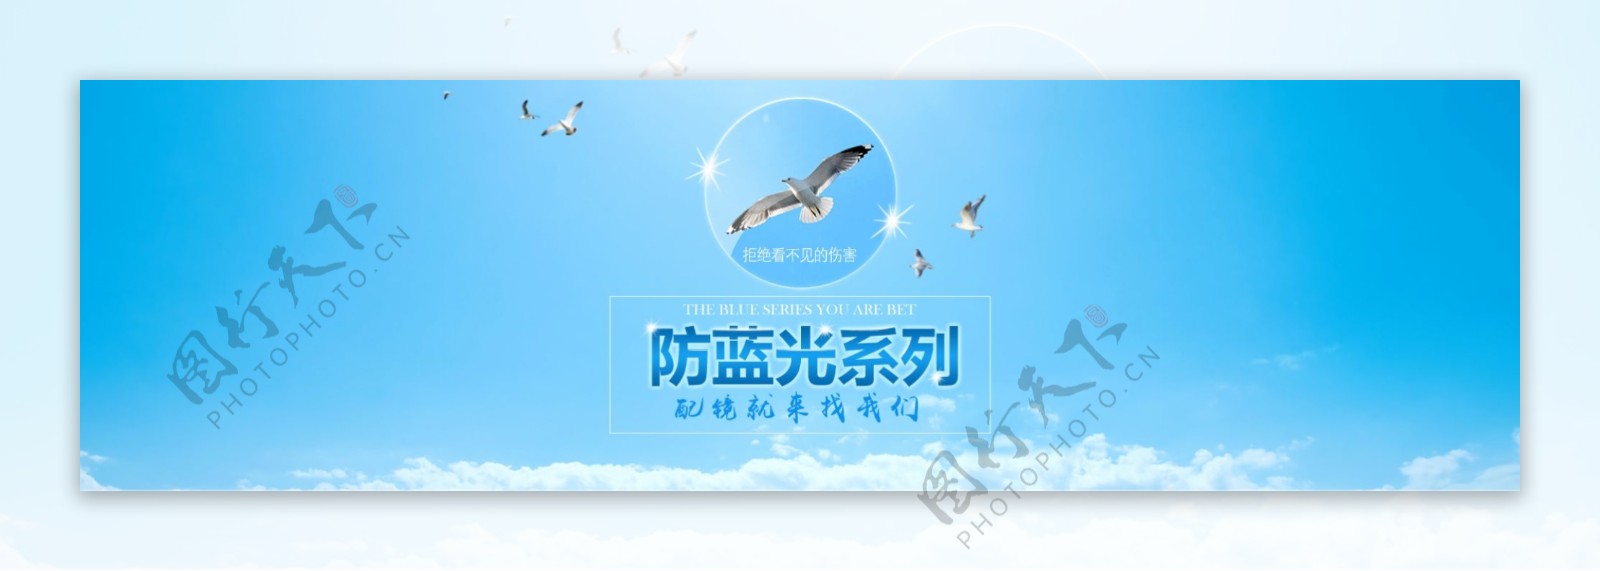 淘宝京东首页海报设计眼镜防蓝光设计